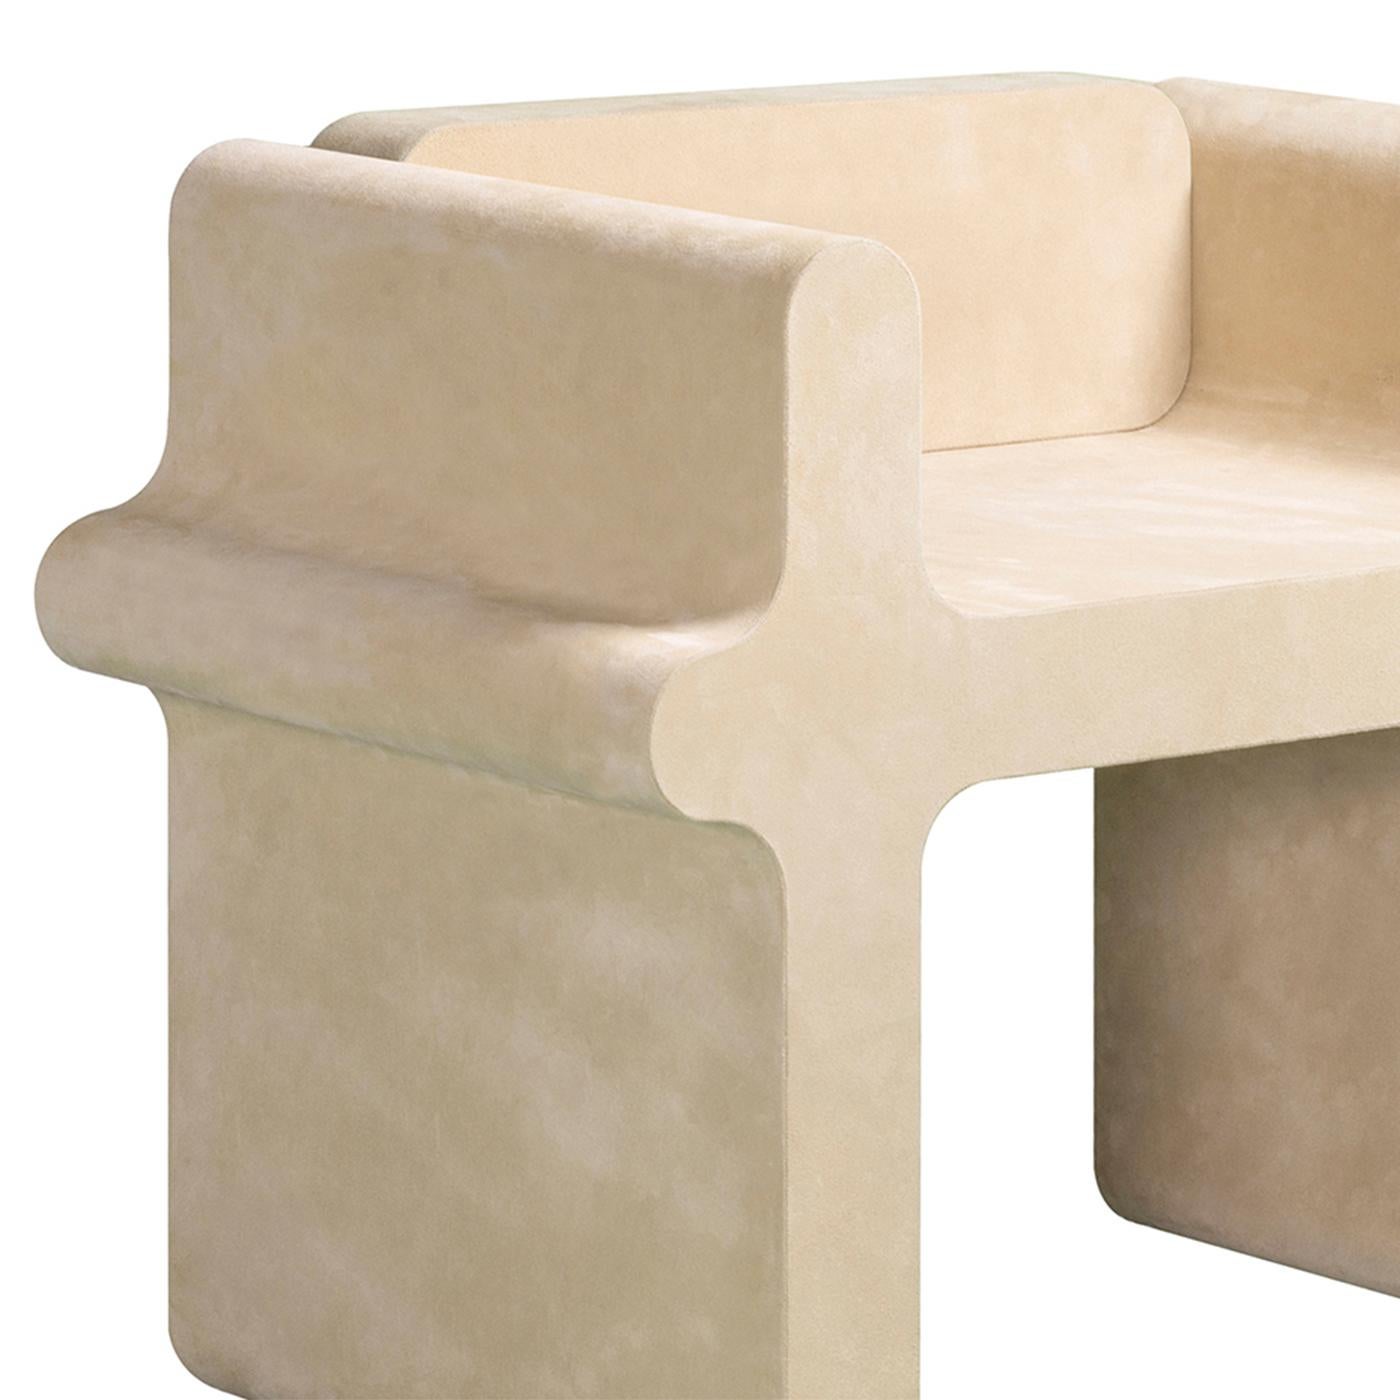 Chaise Liguria Suede avec structure en bois massif et en acier inoxydable 
recouvert de cuir véritable de couleur beige.
Egalement disponible avec d'autres finitions de cuir sur demande.